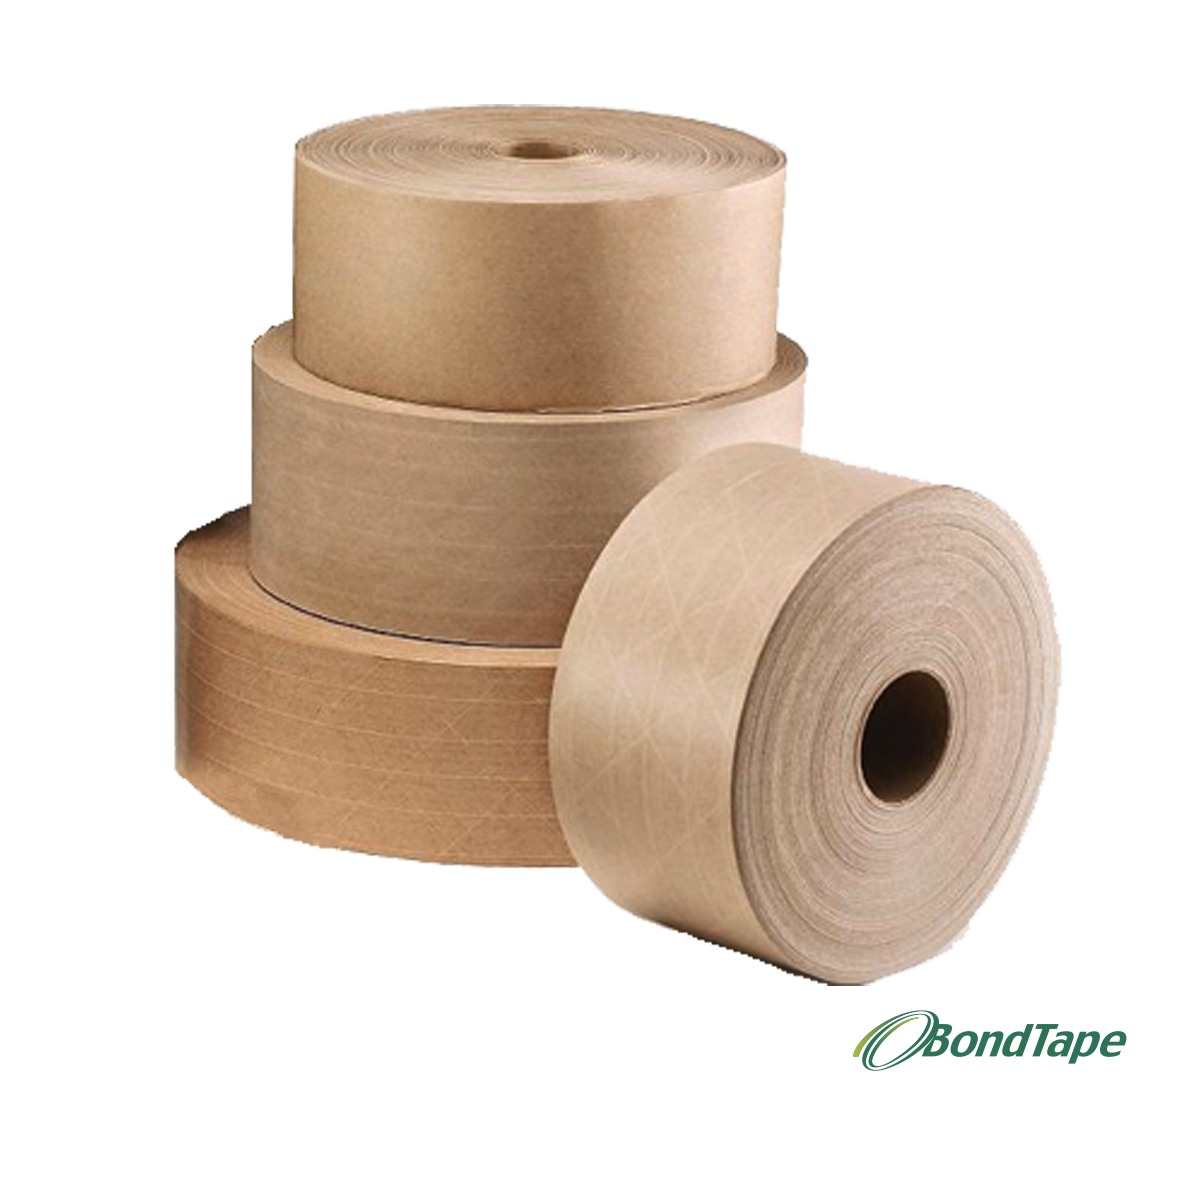 BondTape-stack-of-four-rolls